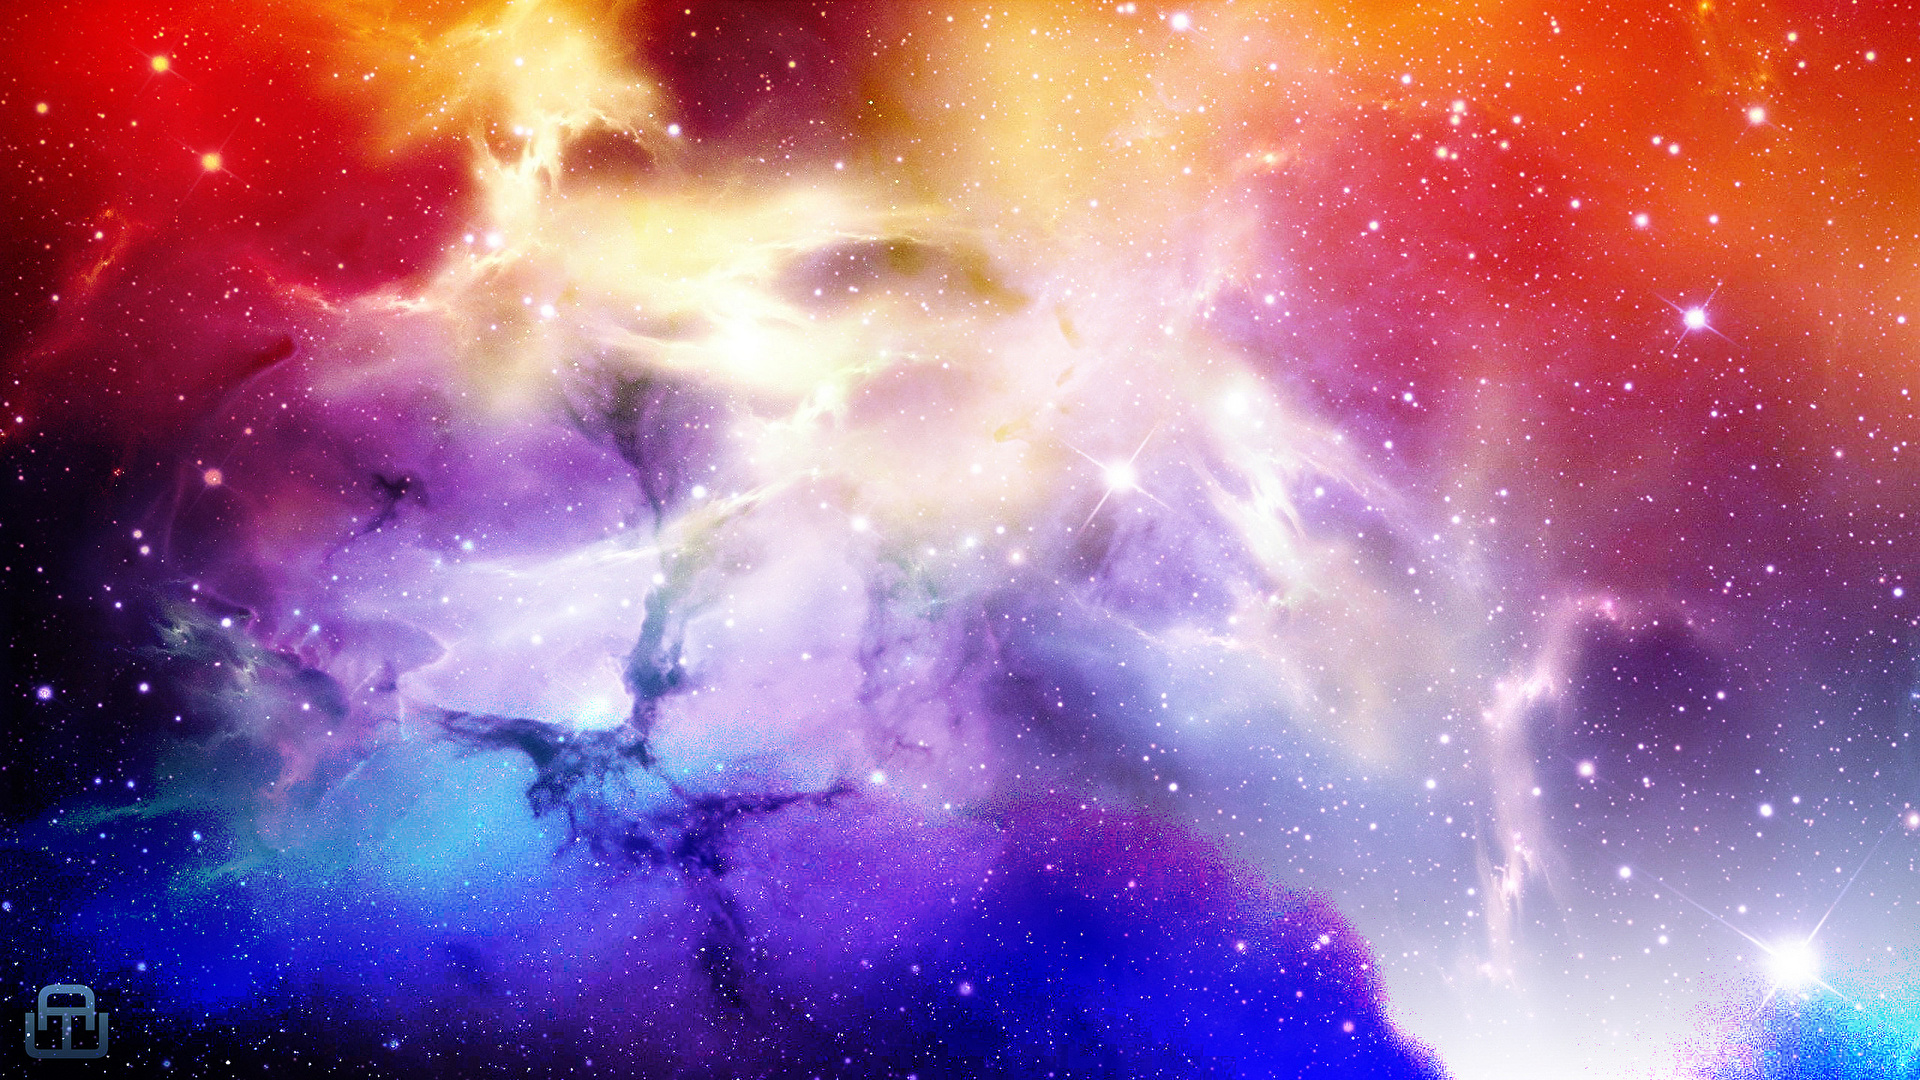 壁紙 19x1080 空間内の星雲 宇宙空間 ダウンロード 写真